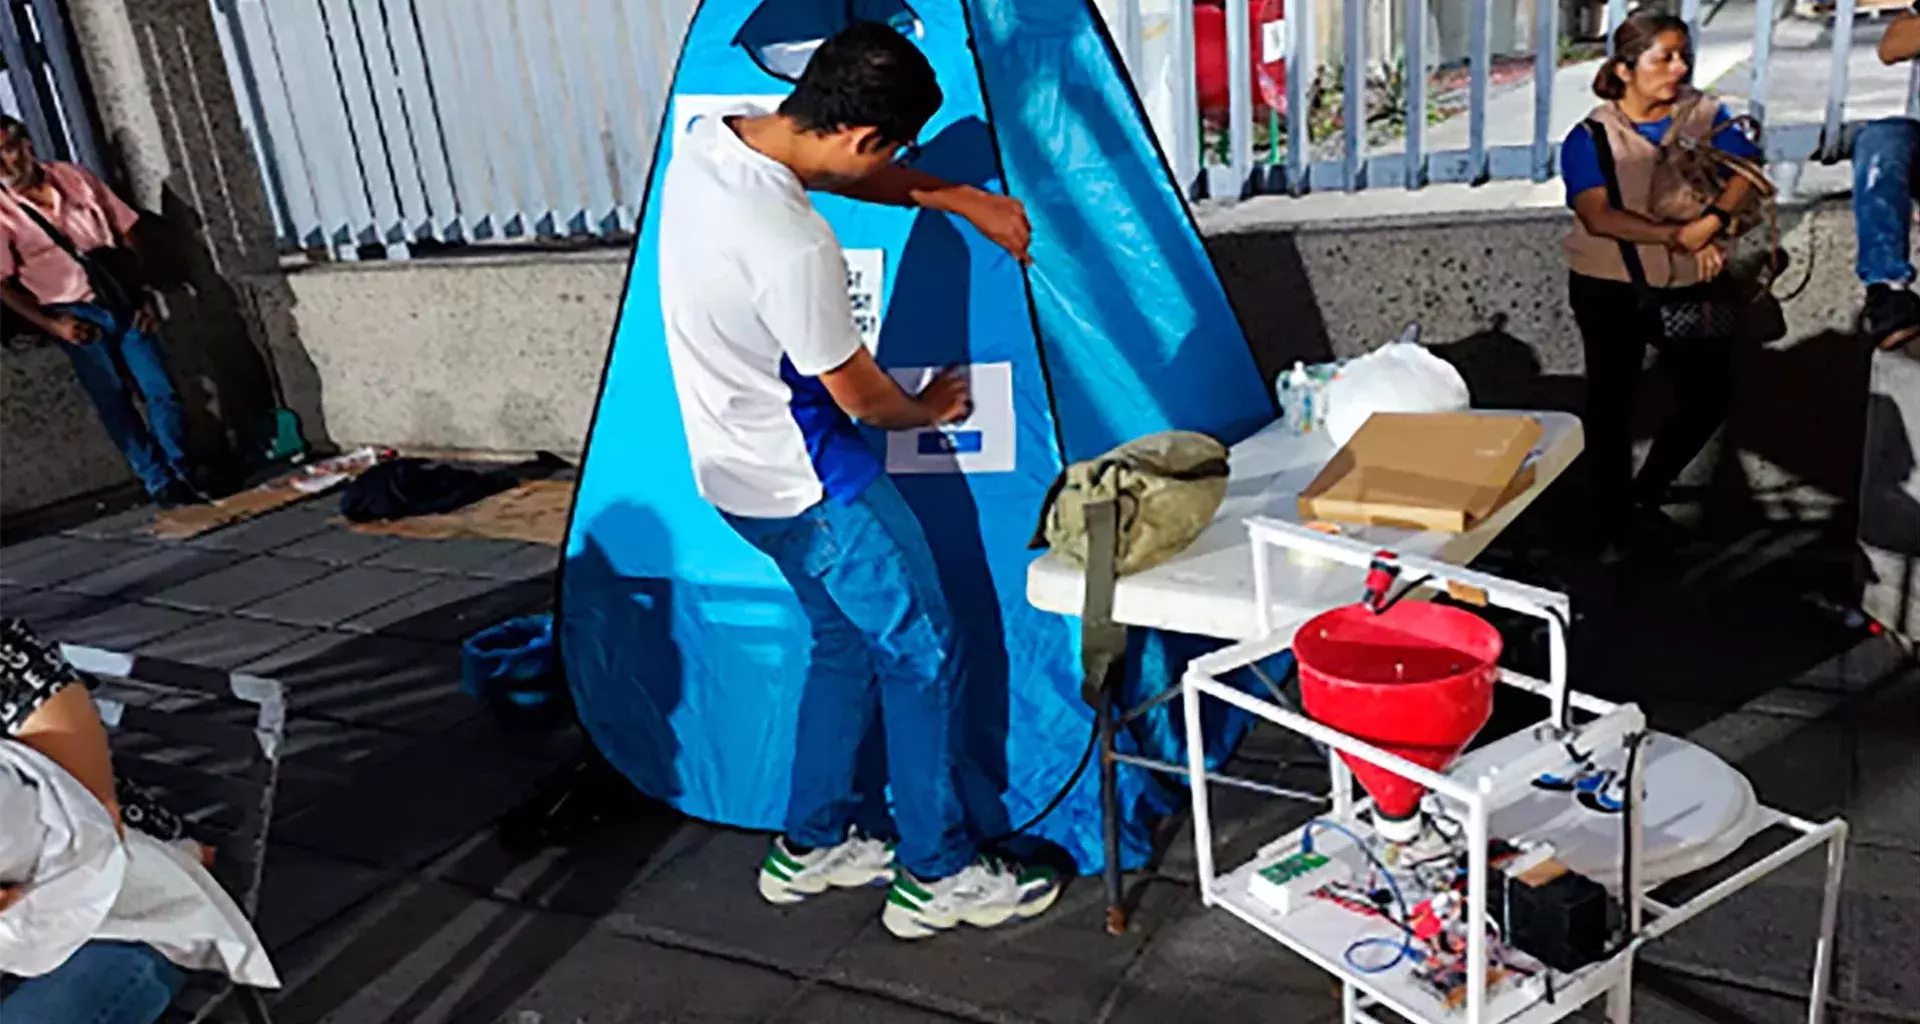 Prototipo de baño seco controlado por aplicación tecnológica fue el proyecto con el que ganó alumno de PrepaTec Guadalajara en PrepApps.